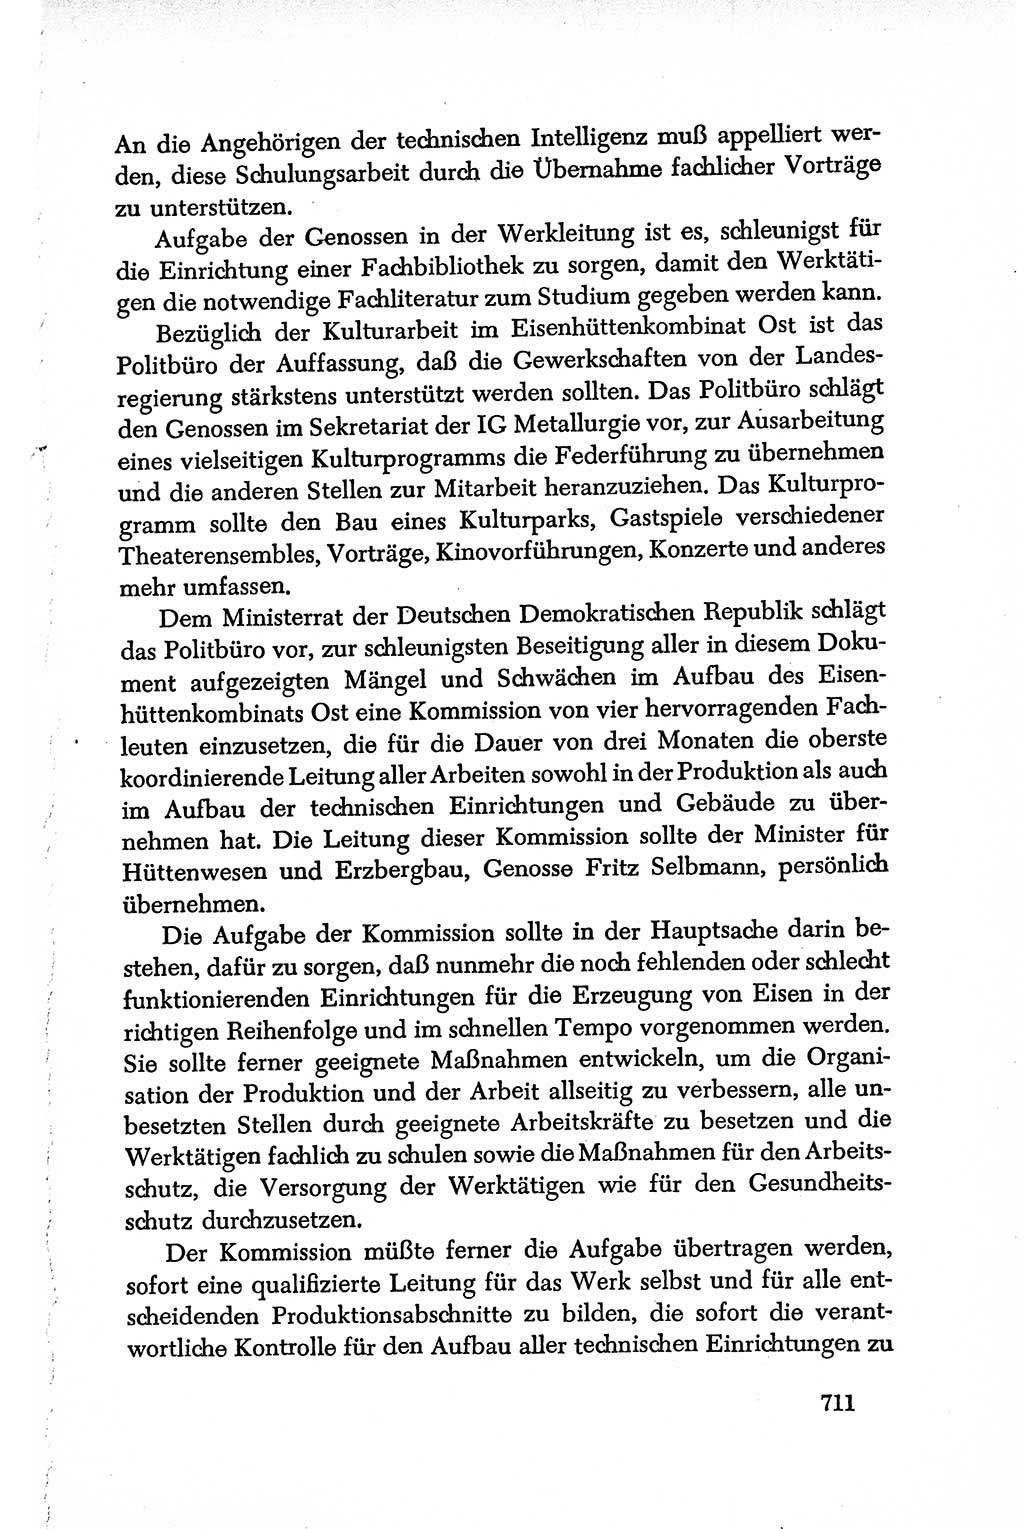 Dokumente der Sozialistischen Einheitspartei Deutschlands (SED) [Deutsche Demokratische Republik (DDR)] 1950-1952, Seite 711 (Dok. SED DDR 1950-1952, S. 711)